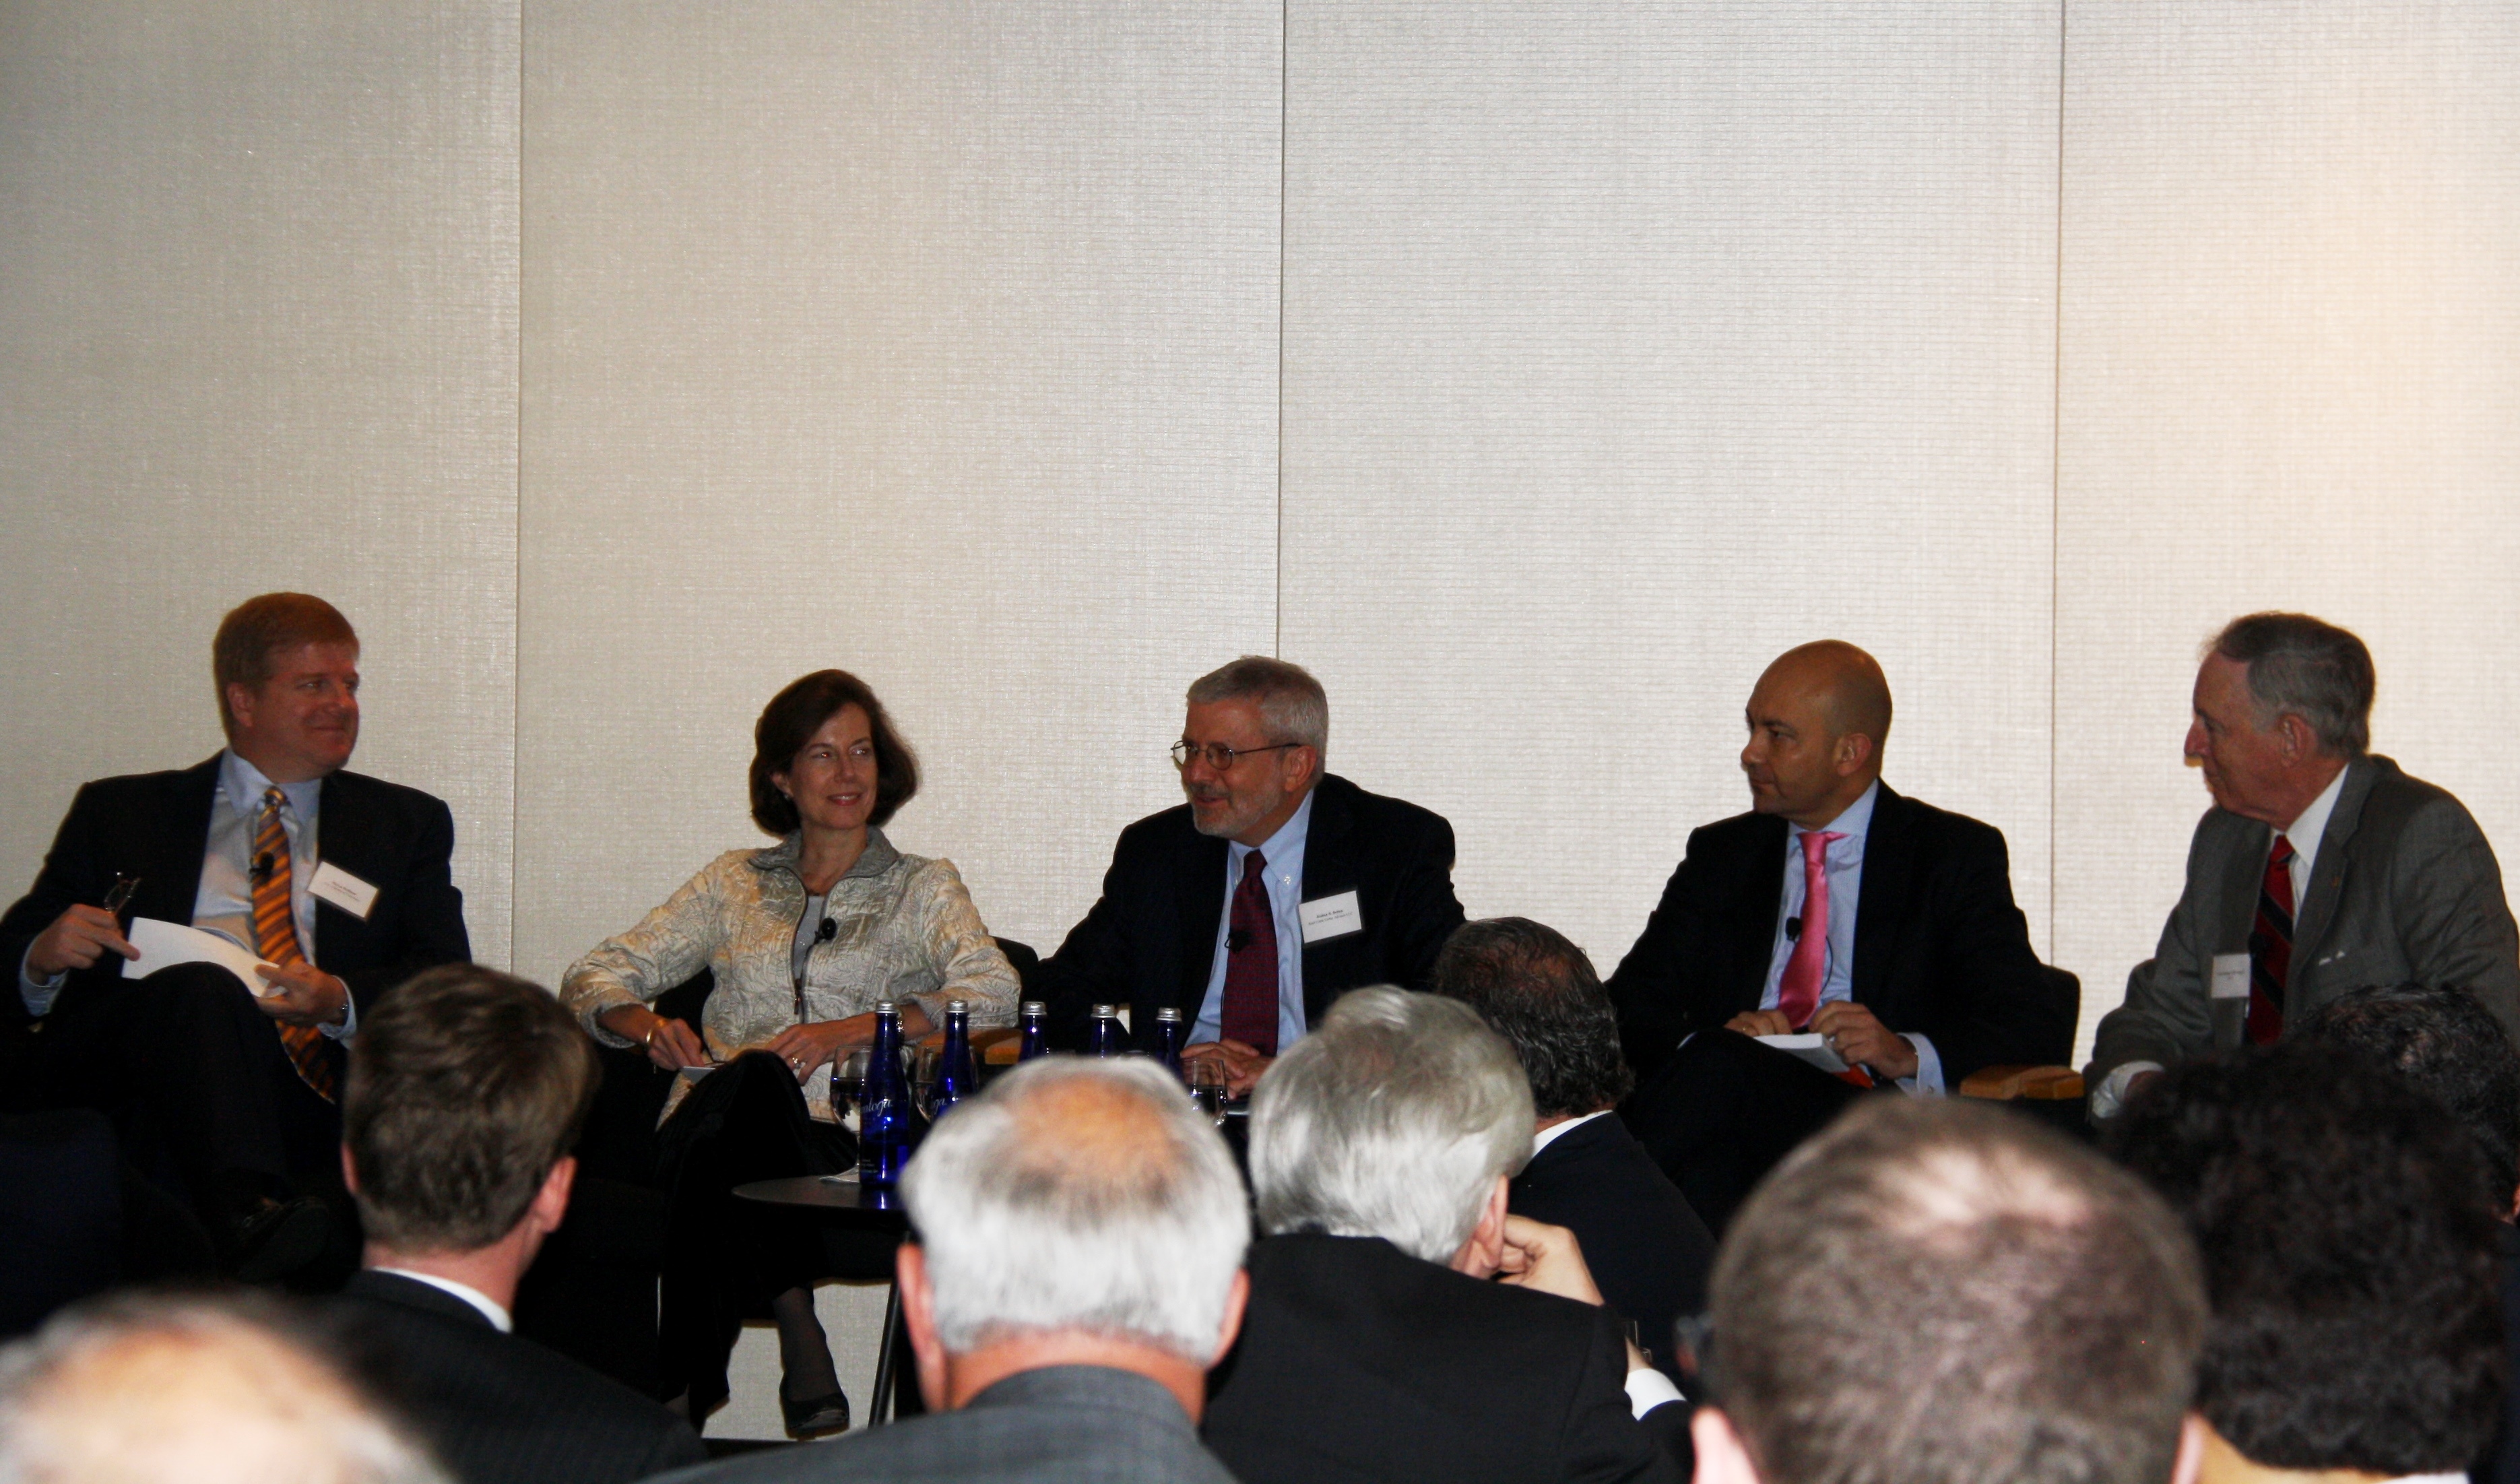 Ambassador Sapiro speaks on panel